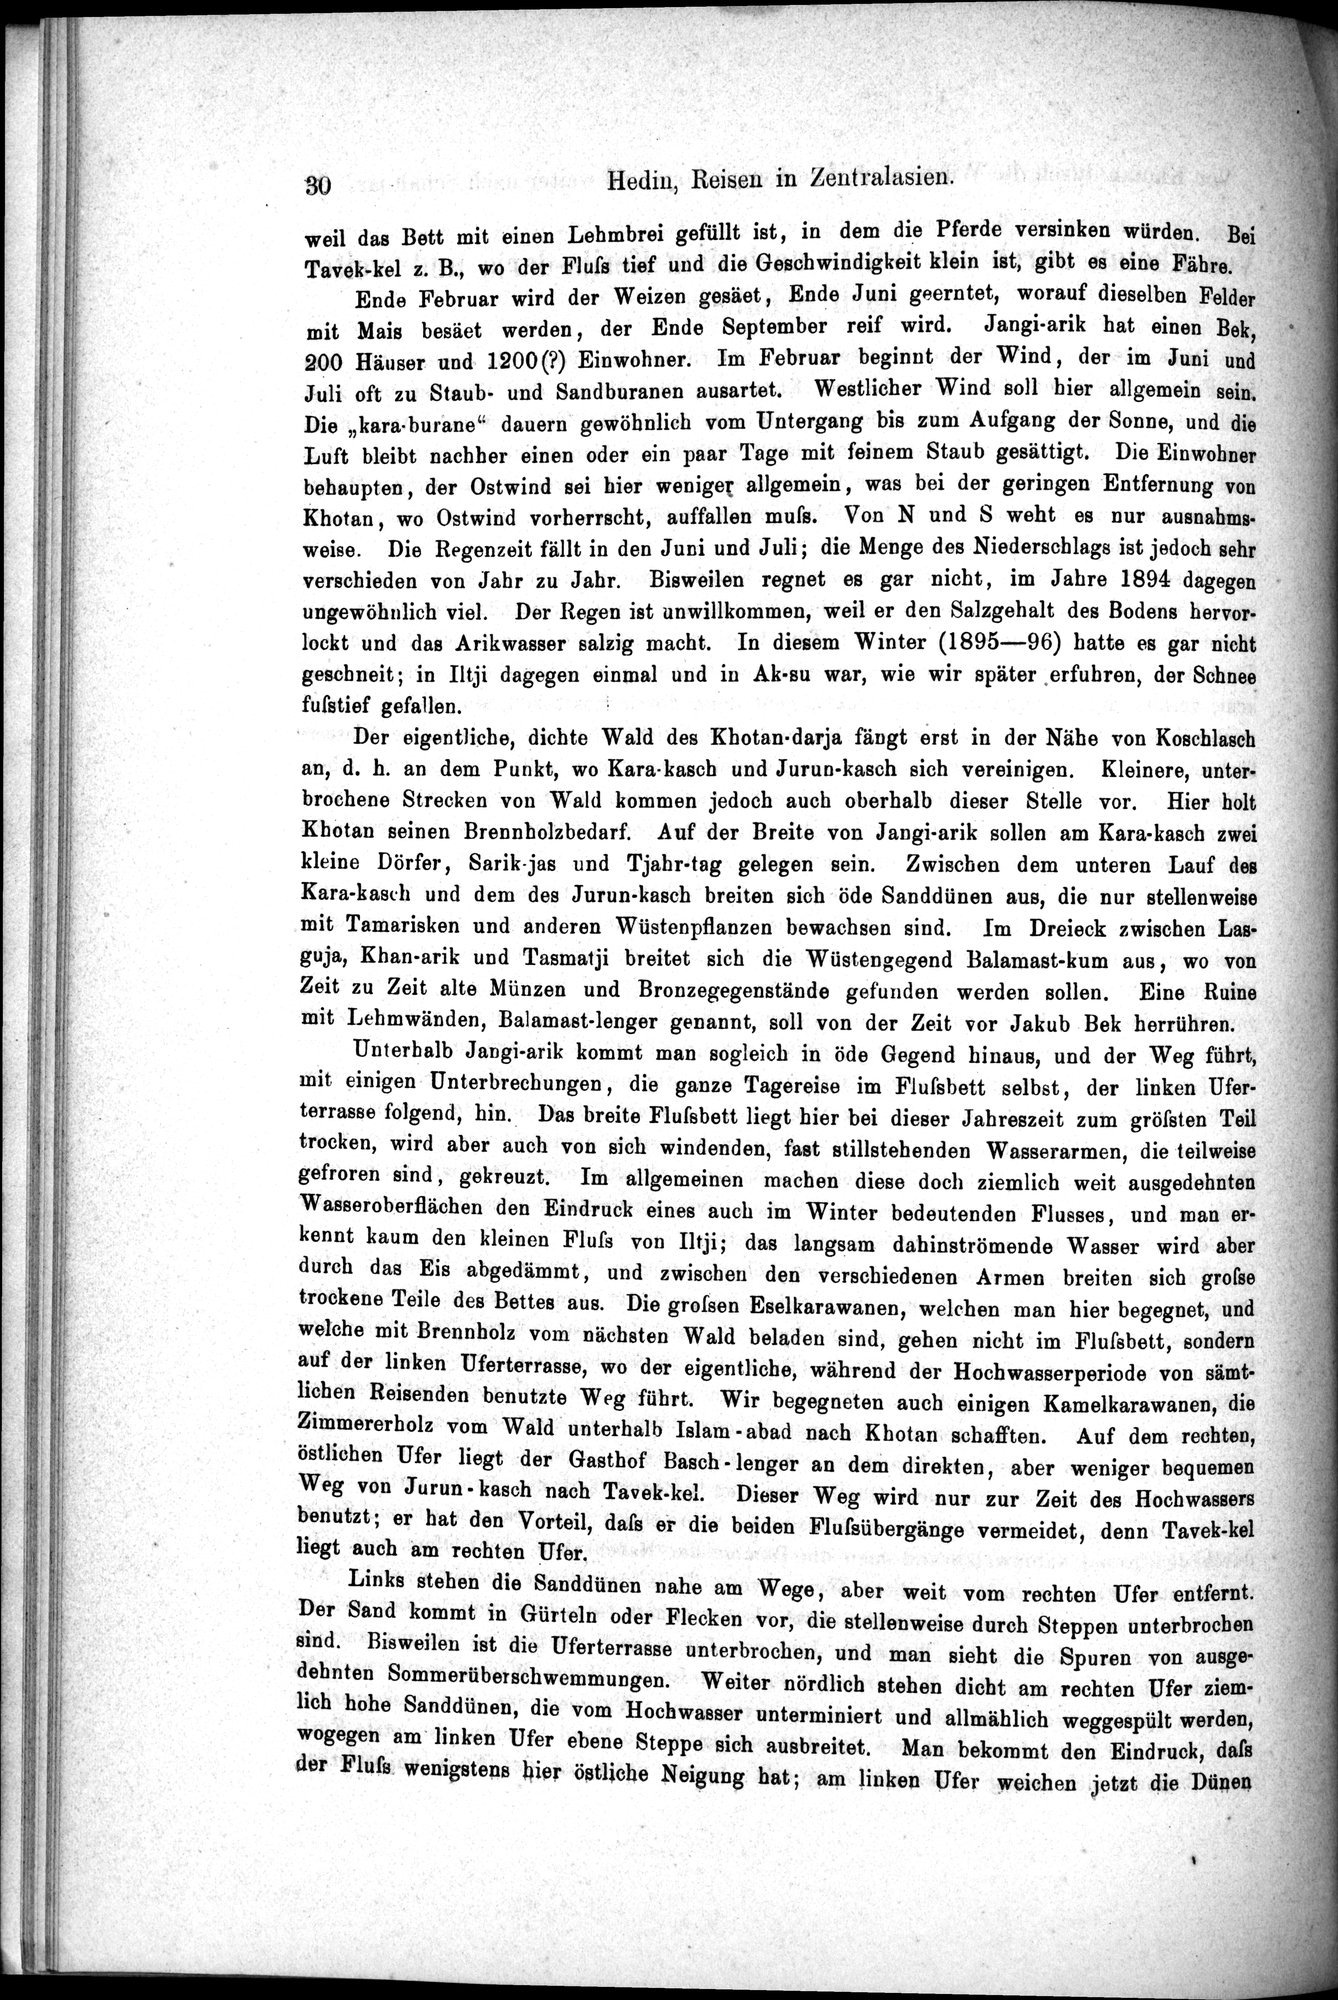 Die Geographische-Wissenschaftlichen Ergebnisse meiner Reisen in Zentralasien, 1894-1897 : vol.1 / Page 42 (Grayscale High Resolution Image)